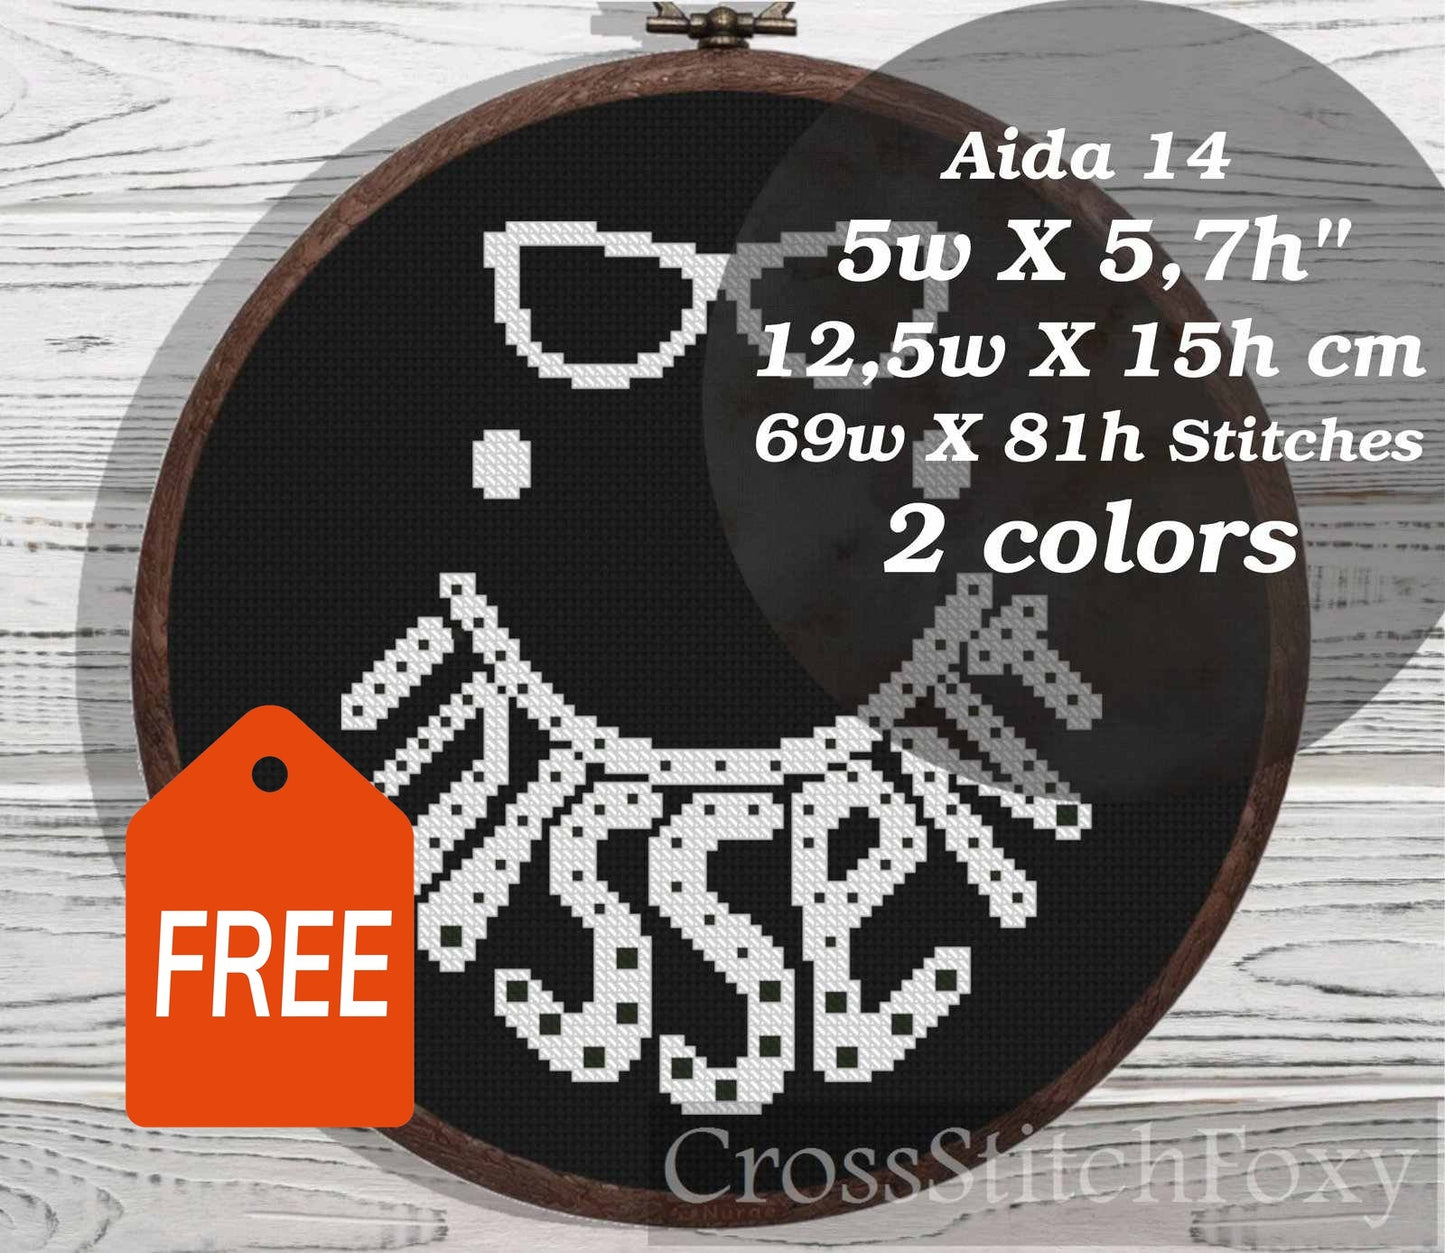 I Dissent RBG cross stitch pattern FREE